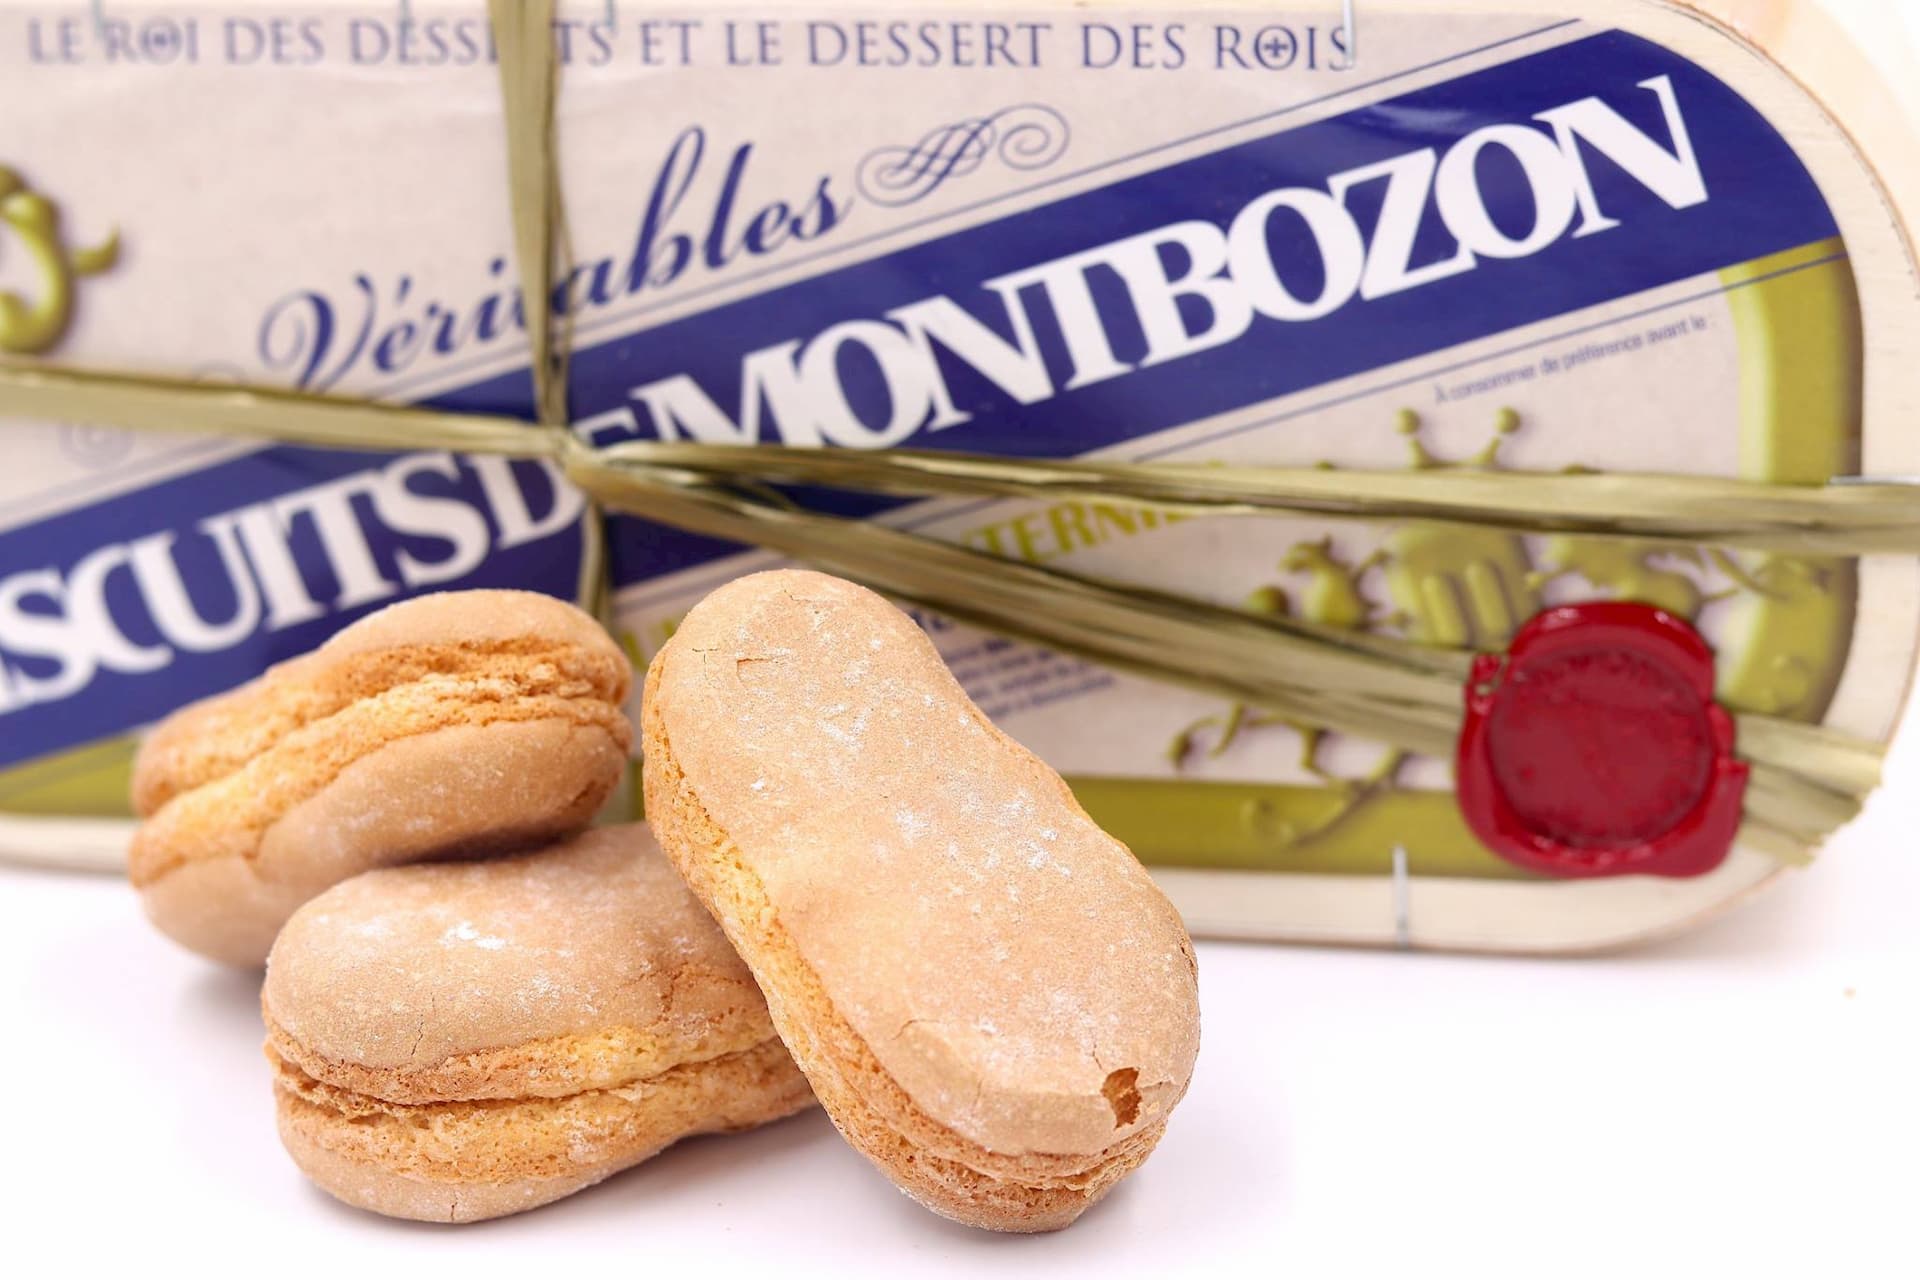 Les Biscuits de Montbozon